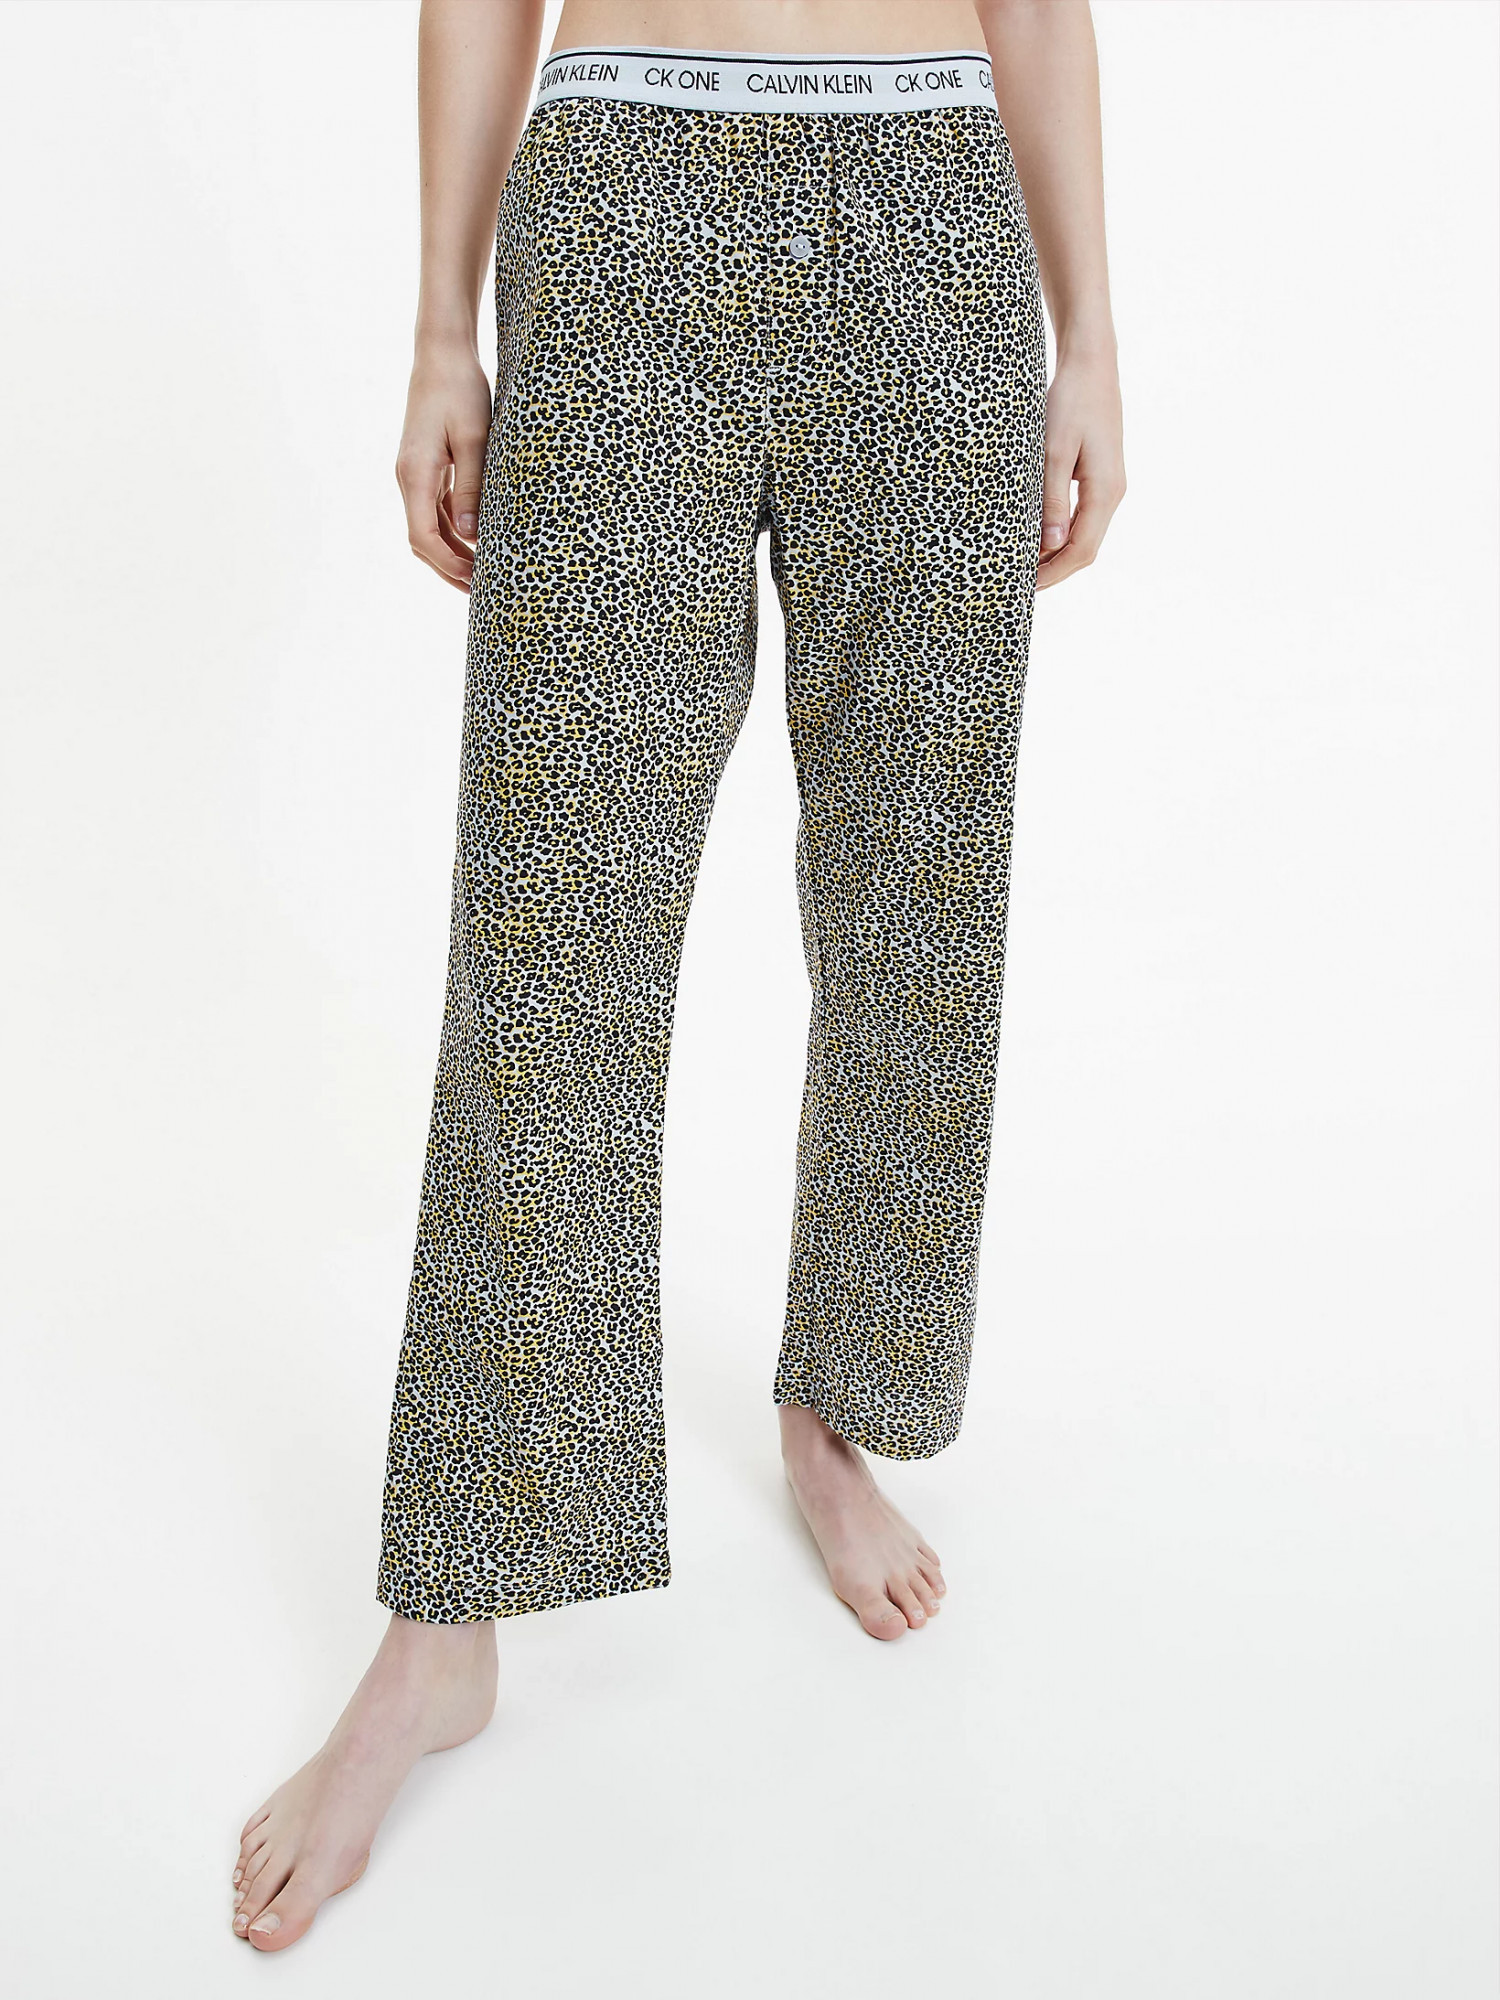 Dámské pyžamové kalhoty QS6433E - V4L Fialová se zvířecím vzorem - Calvin Klein S